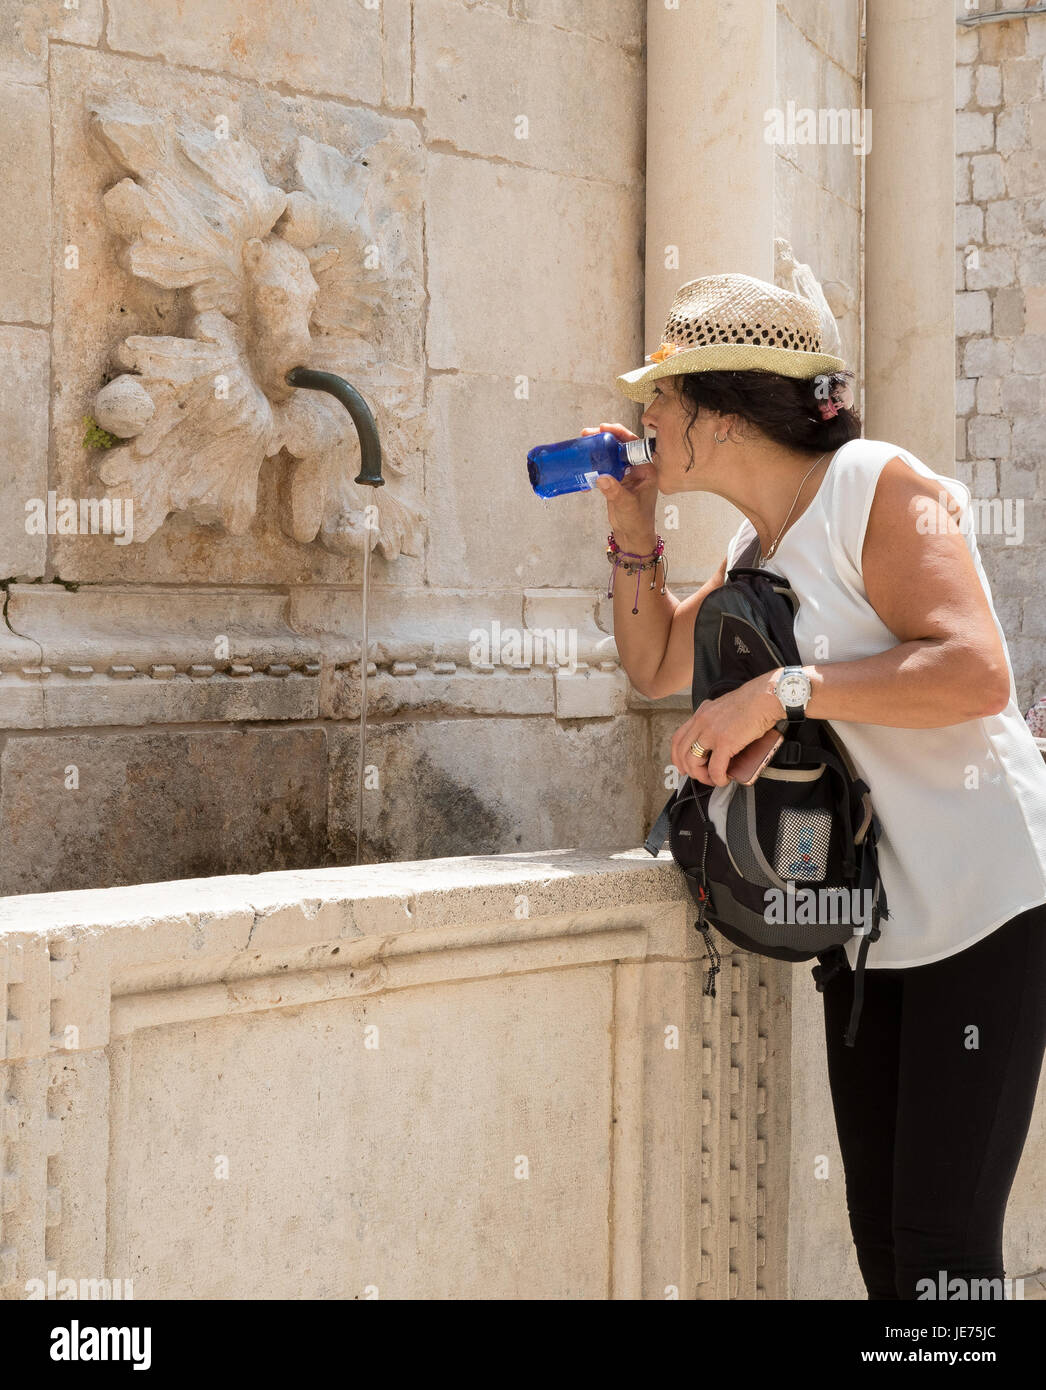 Un turista de beber el agua de la gran fuente de Onofrio más allá de la Puerta Pile en la ciudad vieja de Dubrovnik, en la costa dálmata de Croacia Foto de stock